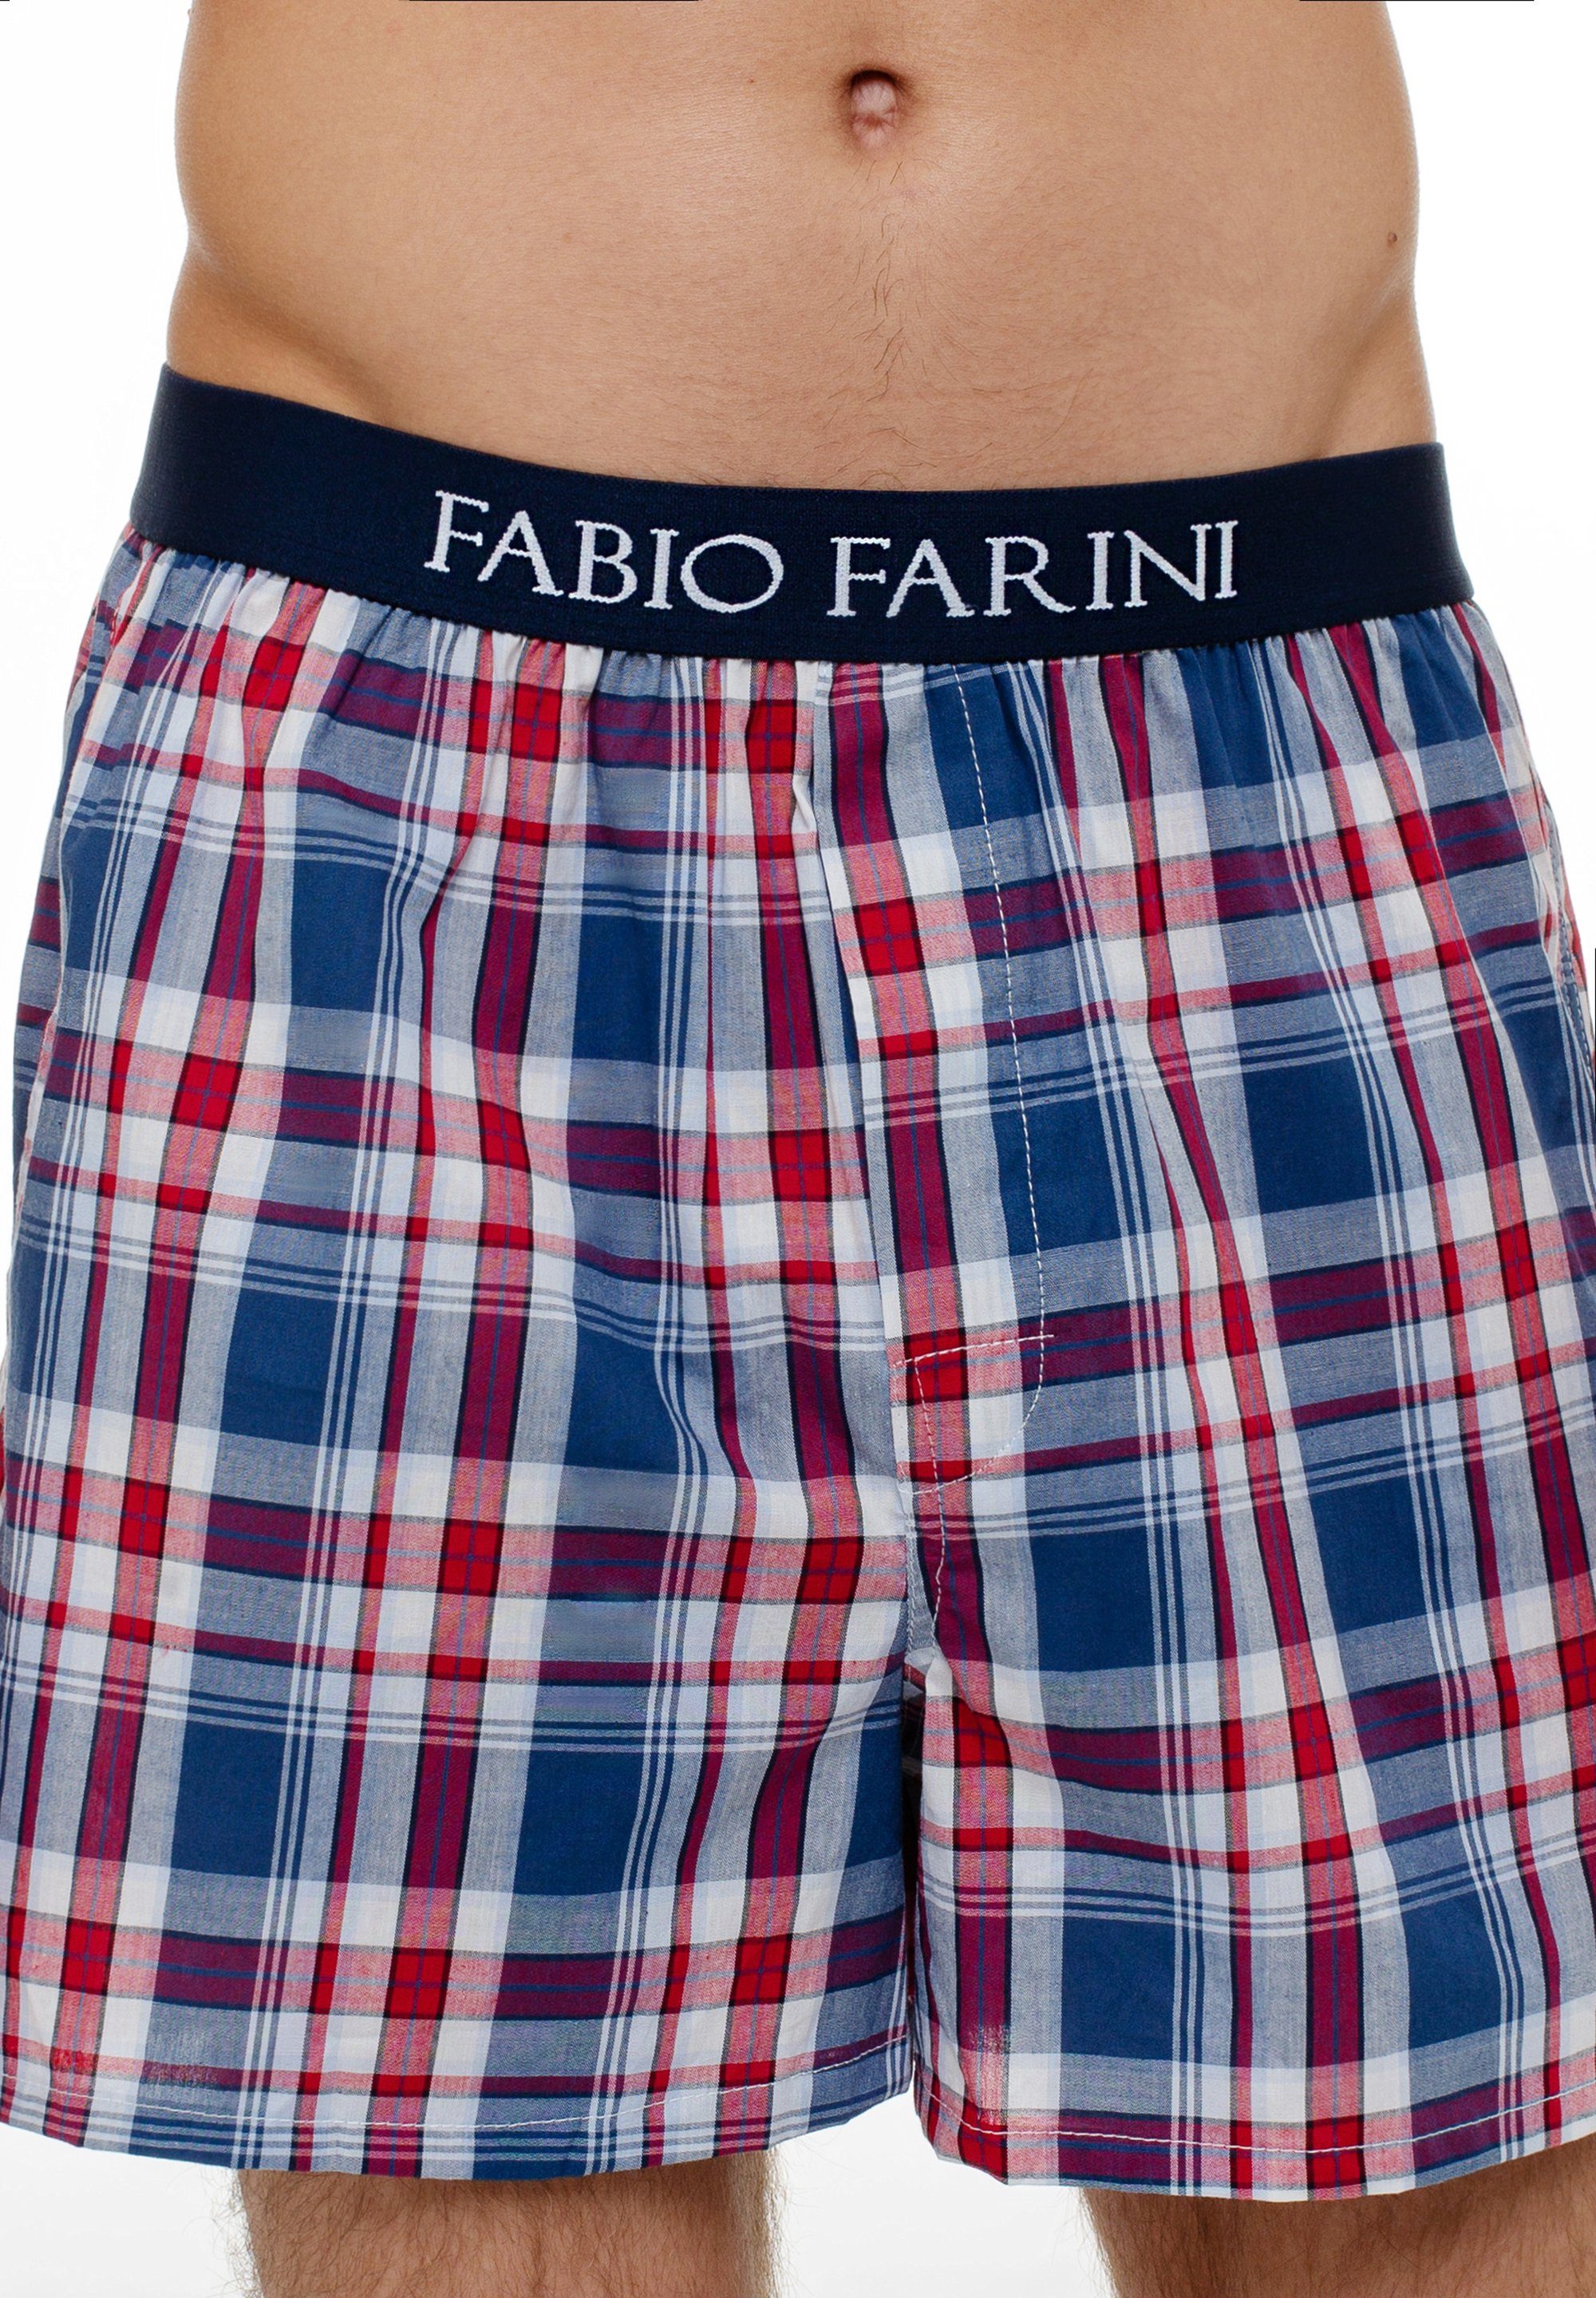 1 mit bequeme, verdeckter Boxershorts Fabio Passform (4-St) Farini Knopfleiste Herren Set Unterhosen - Webboxer Männer weite